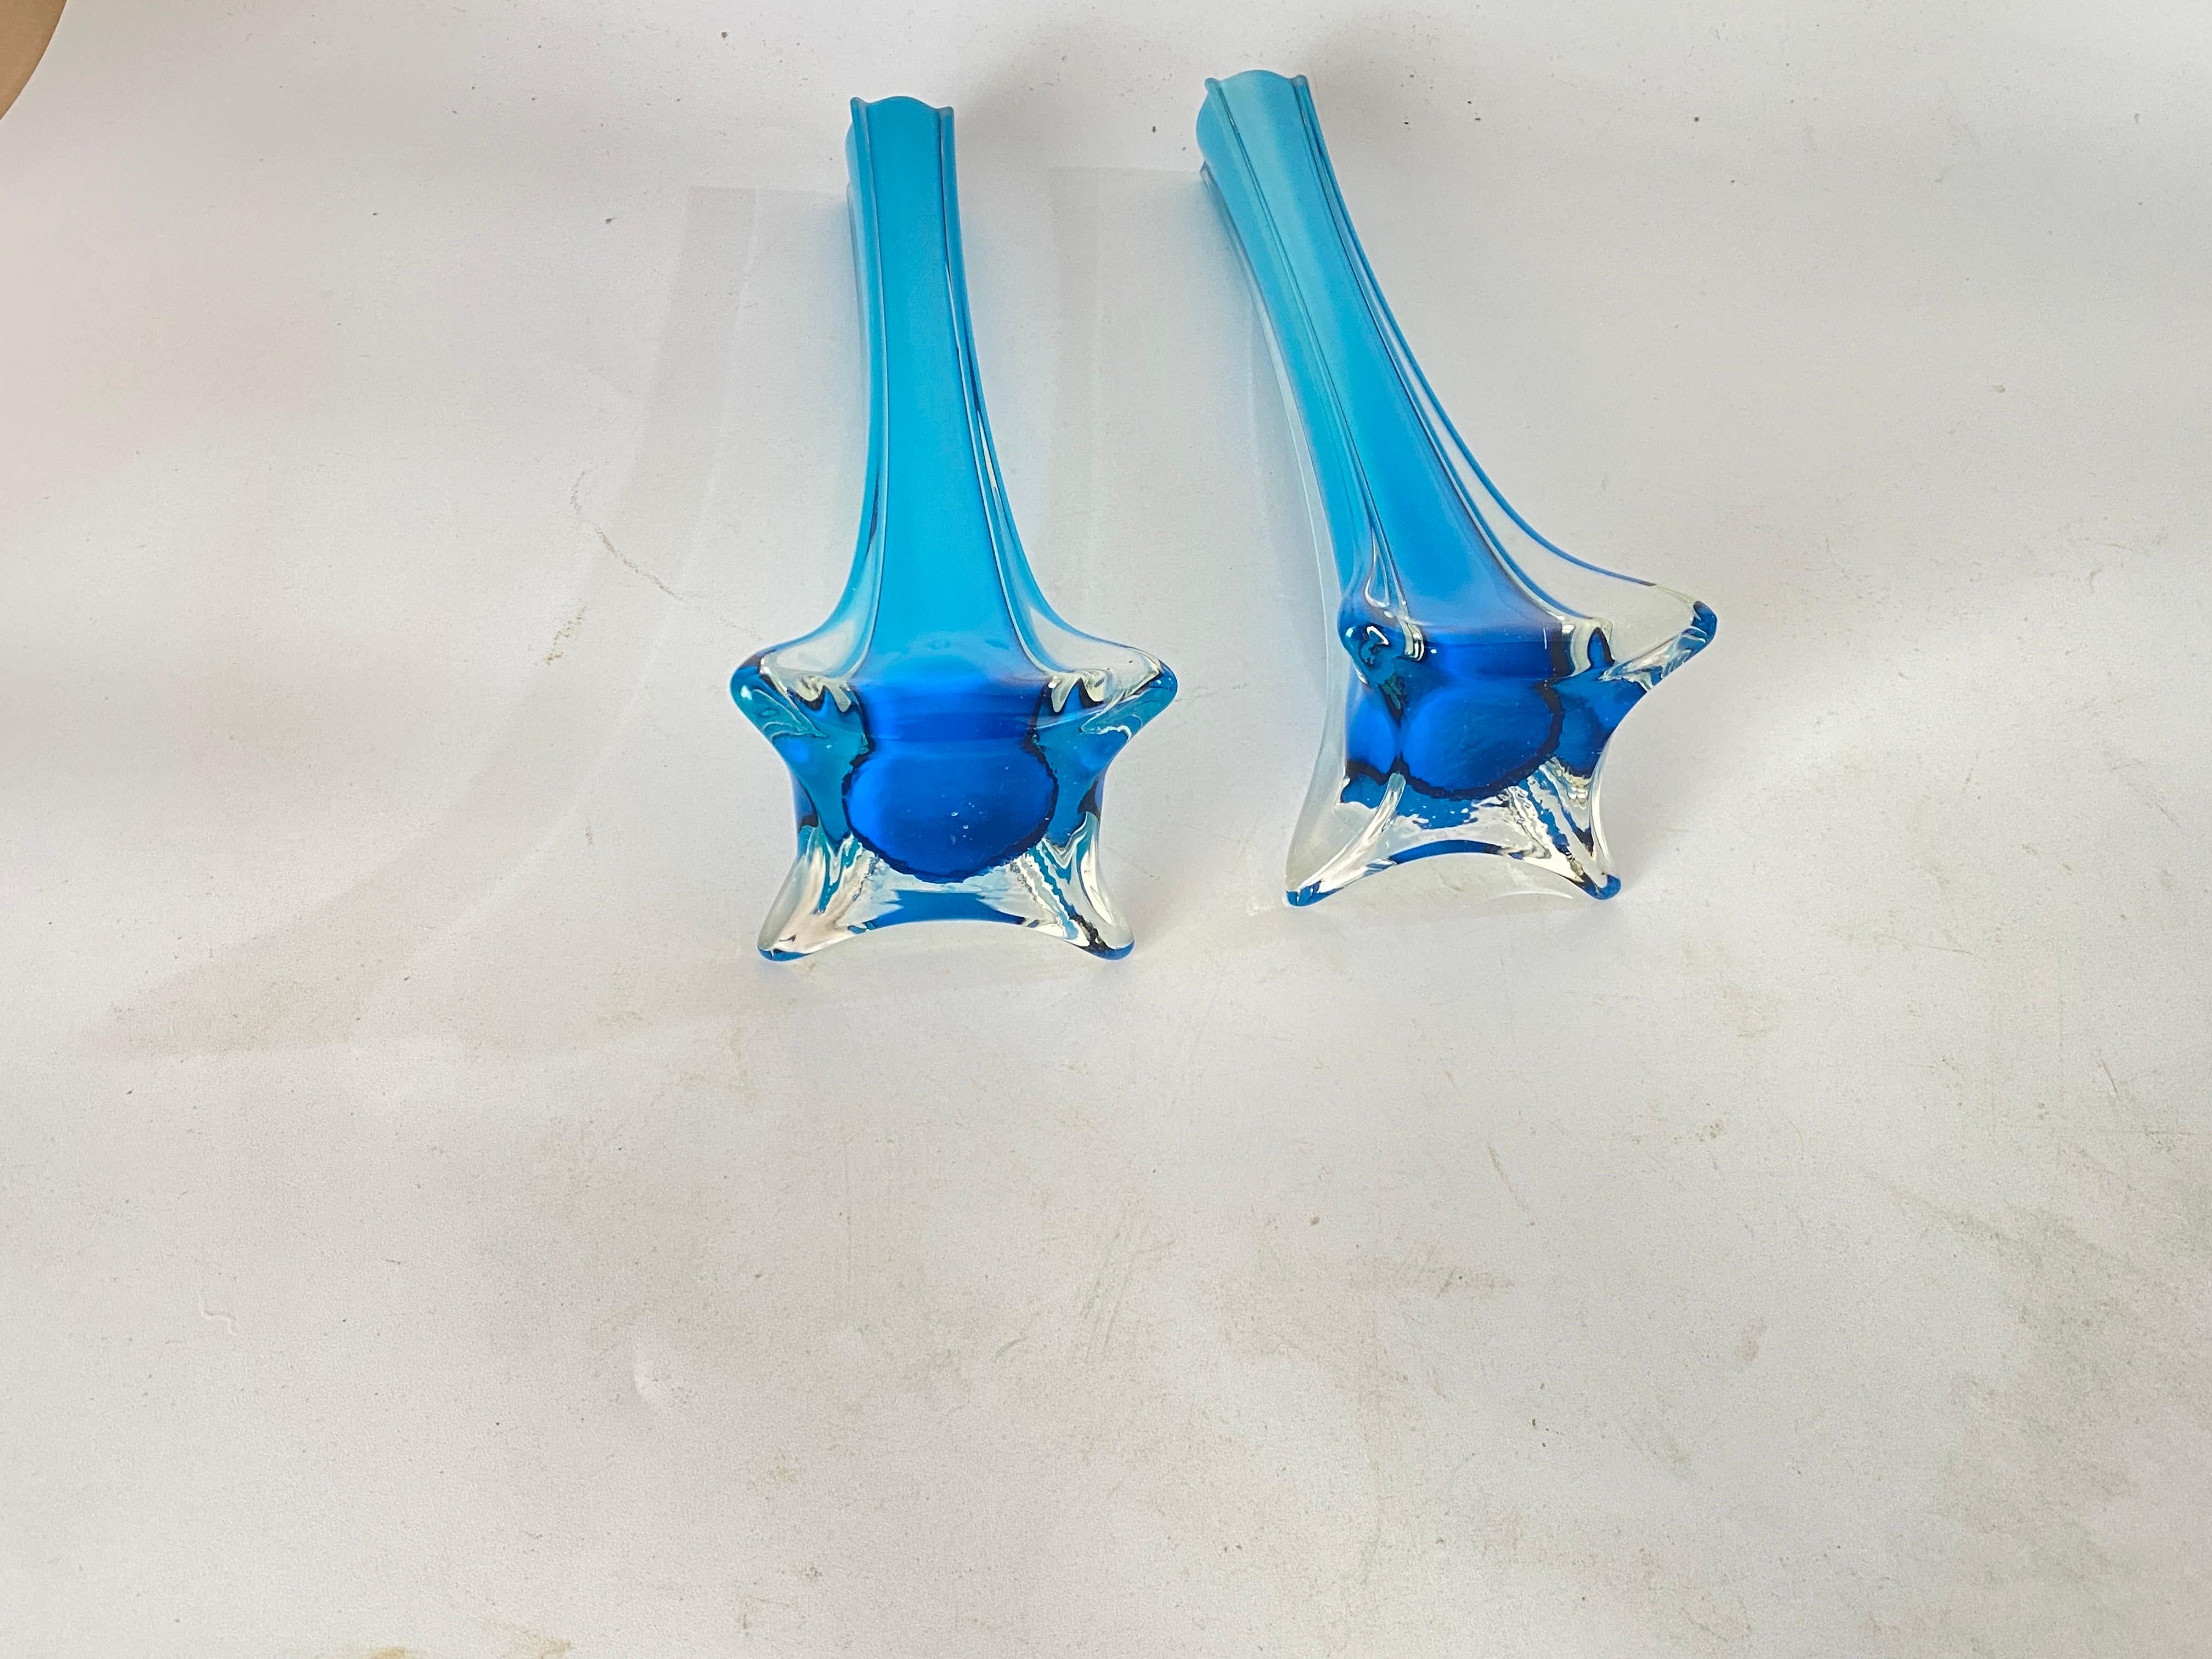 Diese dekorative Glasvase wurde um 1960 in Frankreich hergestellt und ist blau.
Sie sind Soliflores Vasen.